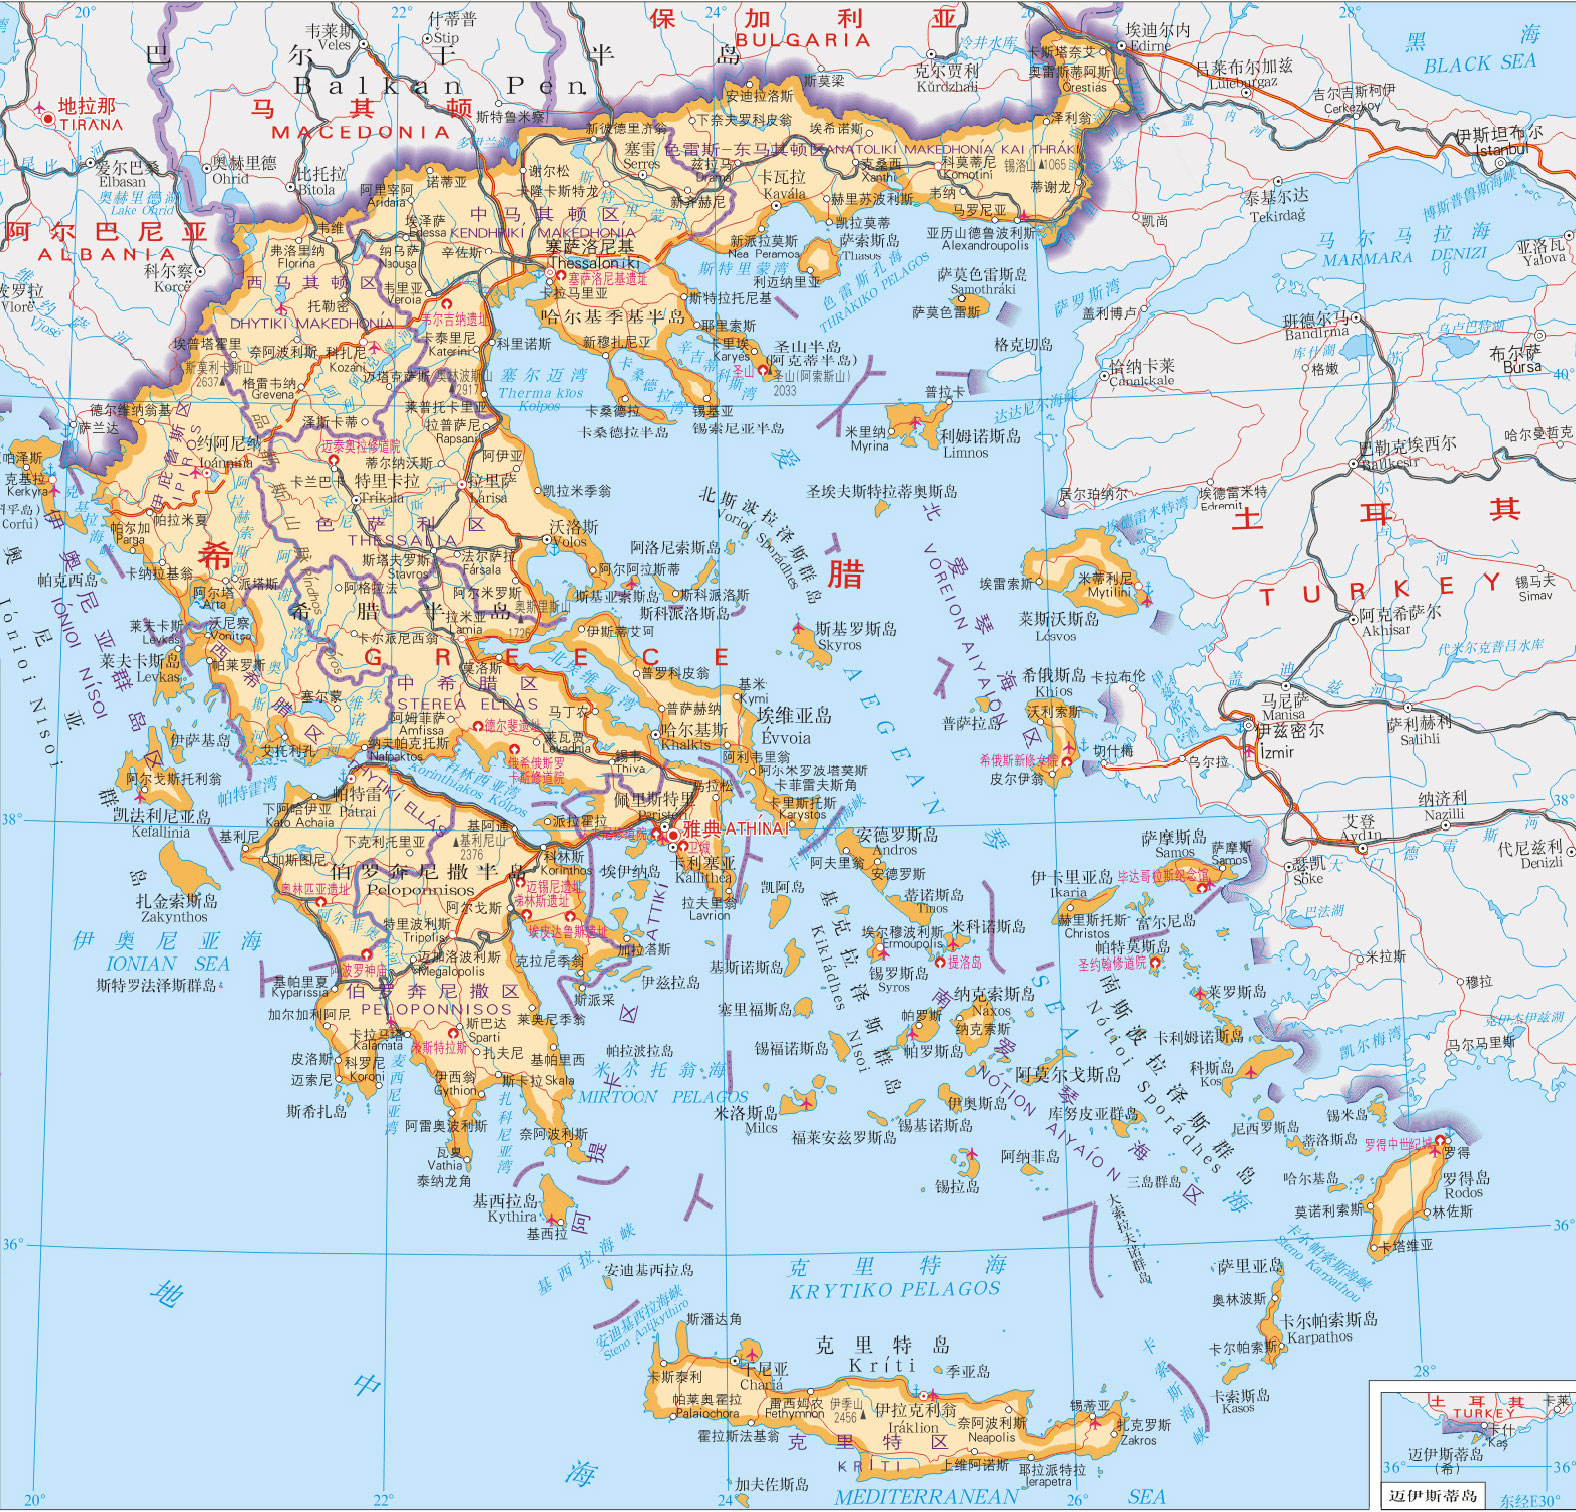 现希腊土耳其边界 资料图